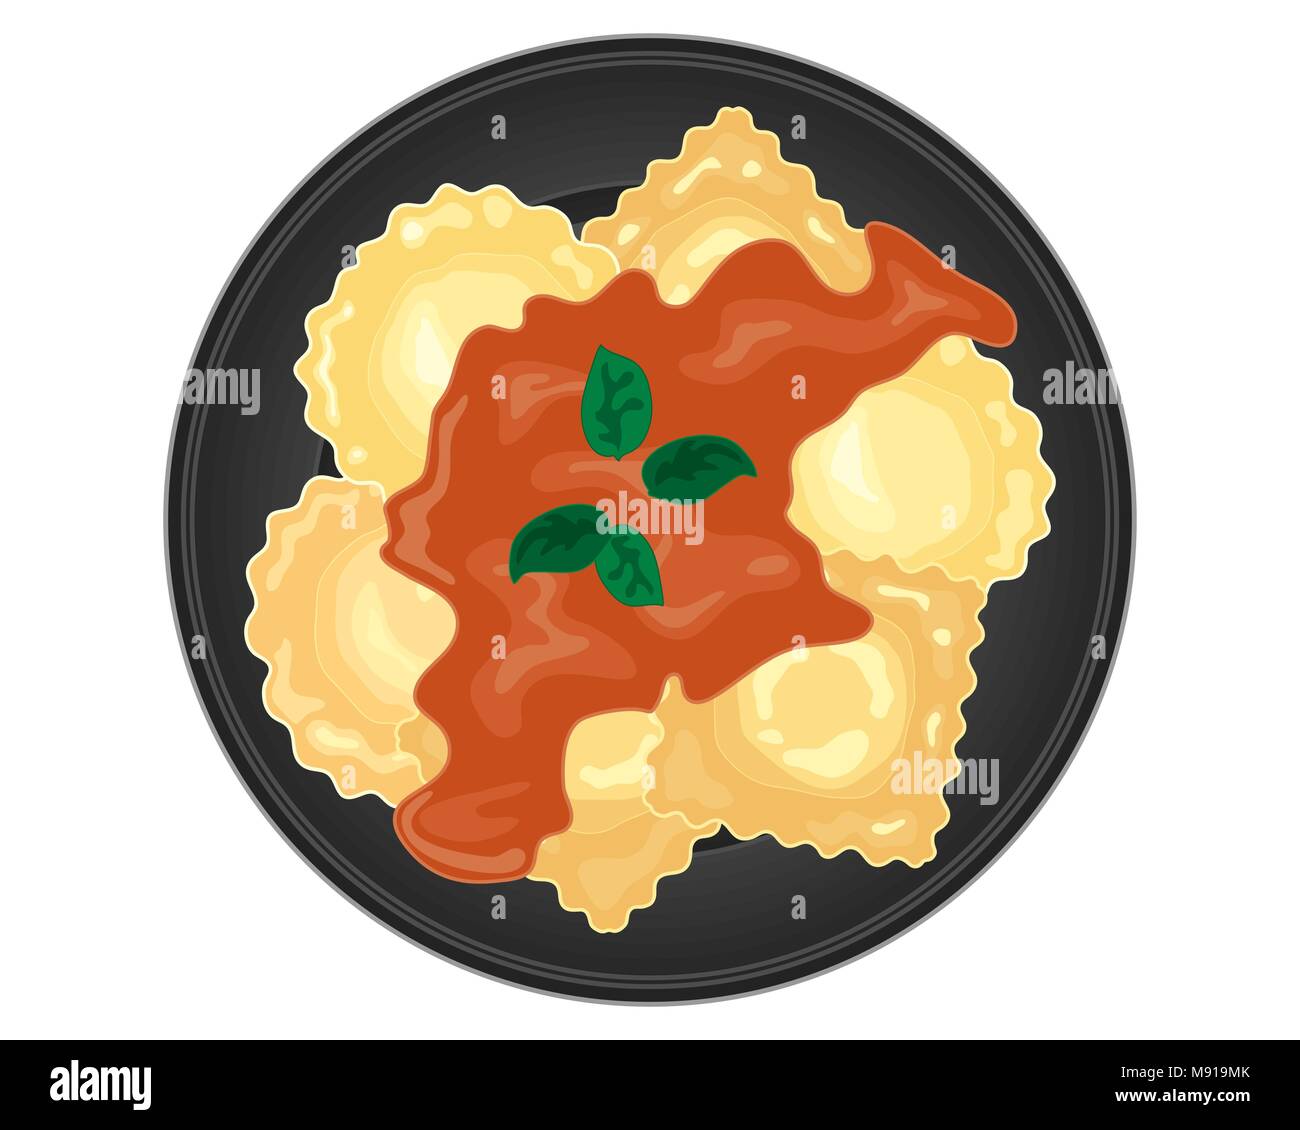 Ein Vektor Abbildung im EPS 10 Format der Italienischen ravioli auf eine glänzende schwarze Platte mit einem reichhaltigen Tomatensauce mit Basilikum auf weißem Hintergrund Stock Vektor